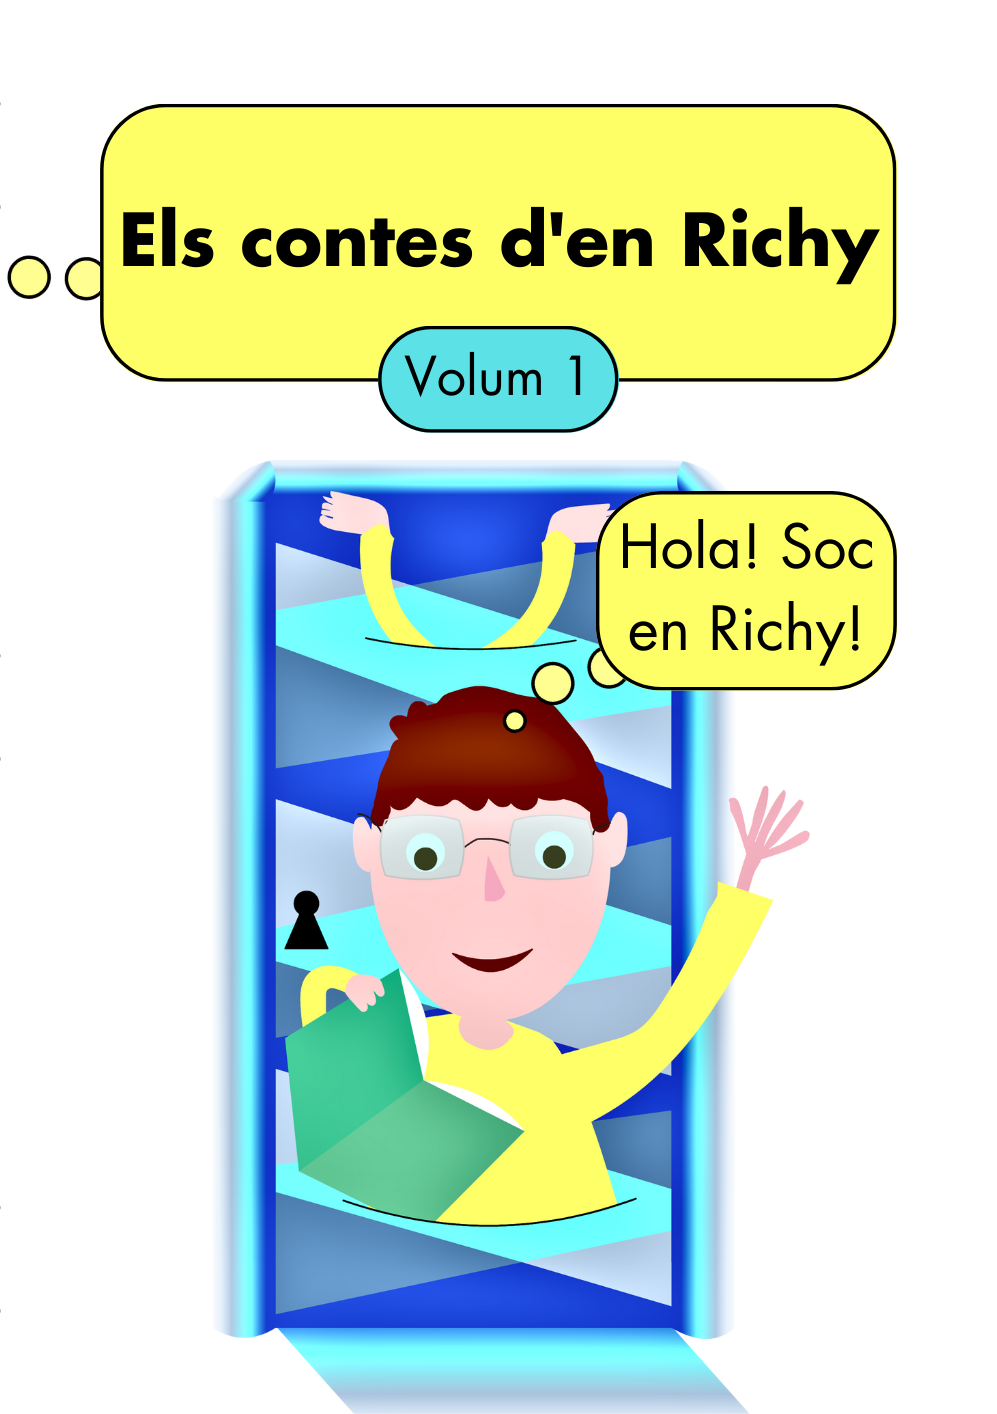 Ver Els contes d’en Richy volum 1